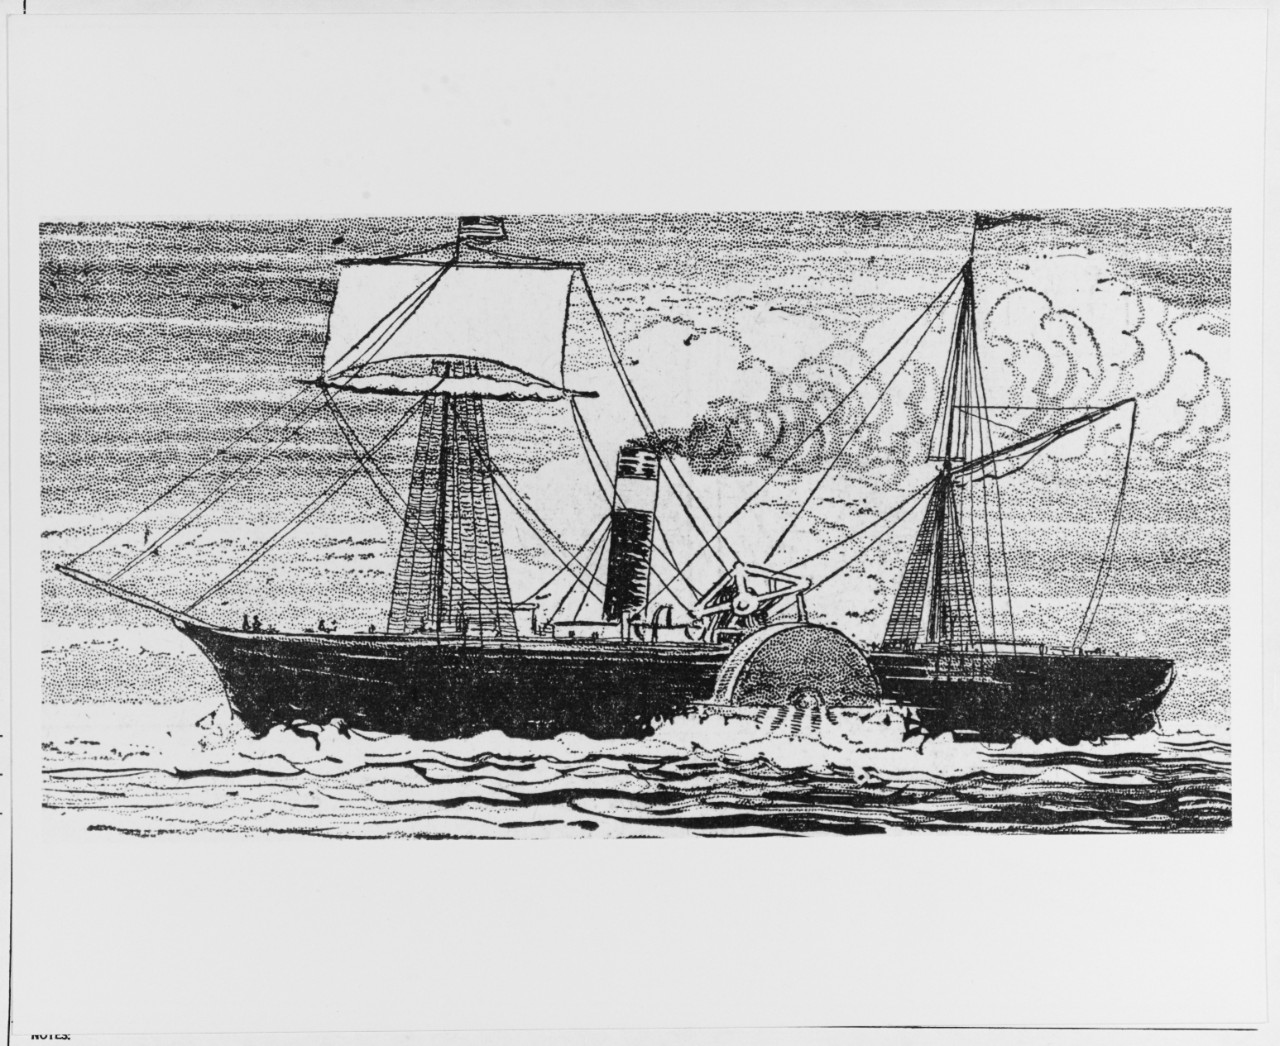 SS JOHN RANDOLPH